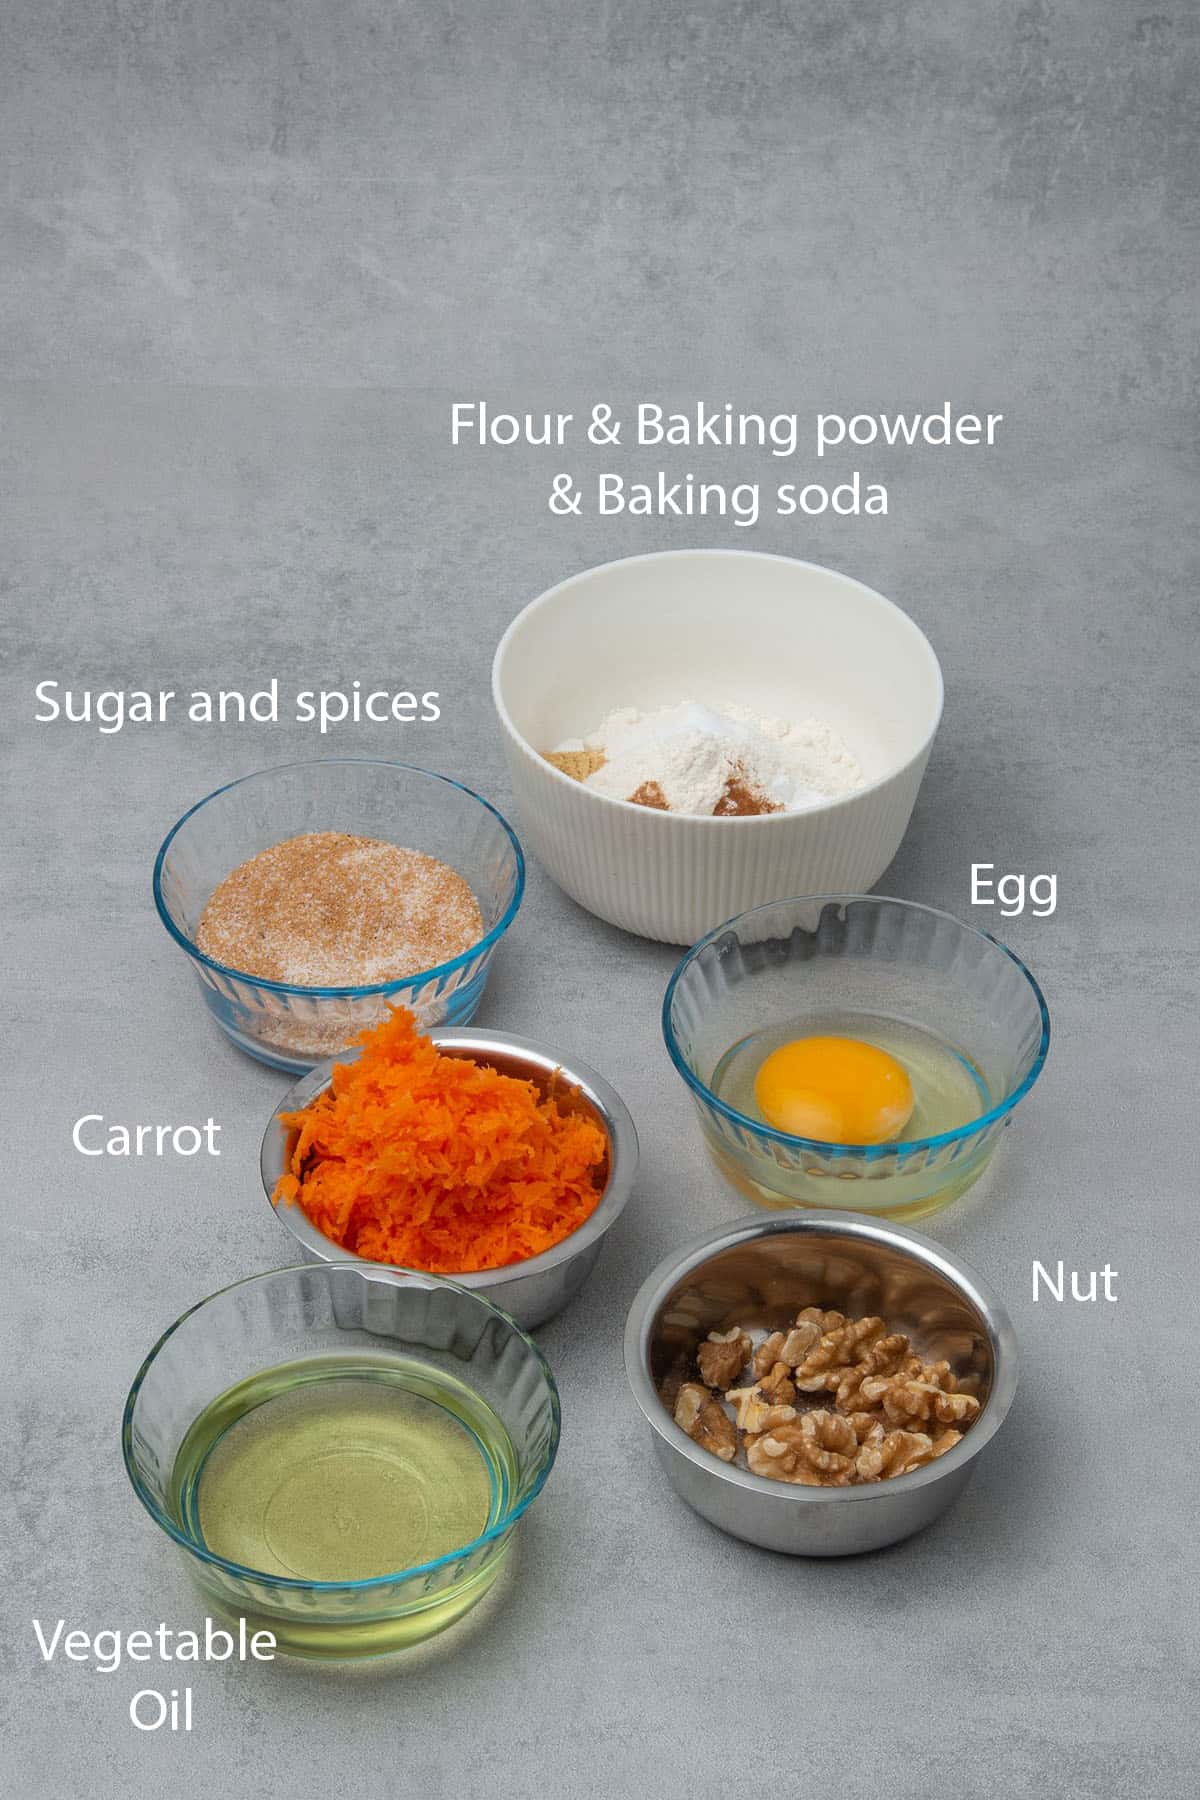 Carrot mini cake ingredients.